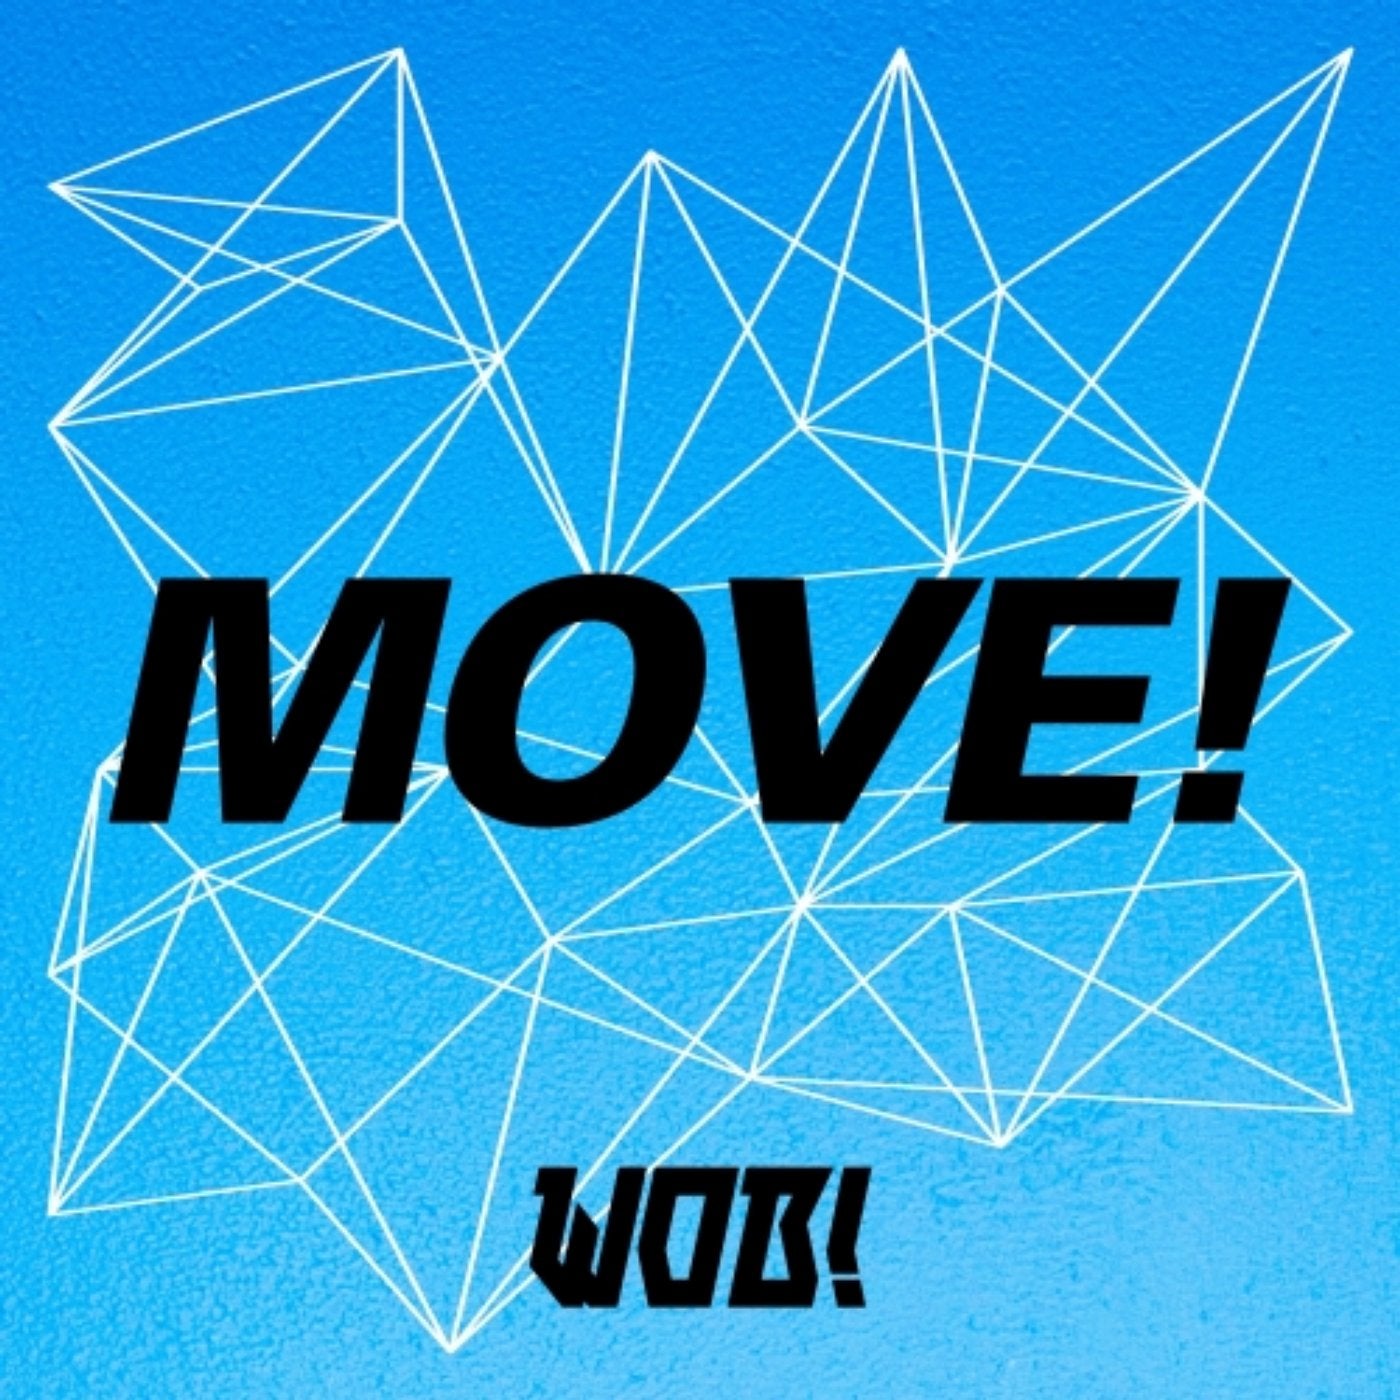 MOVE!